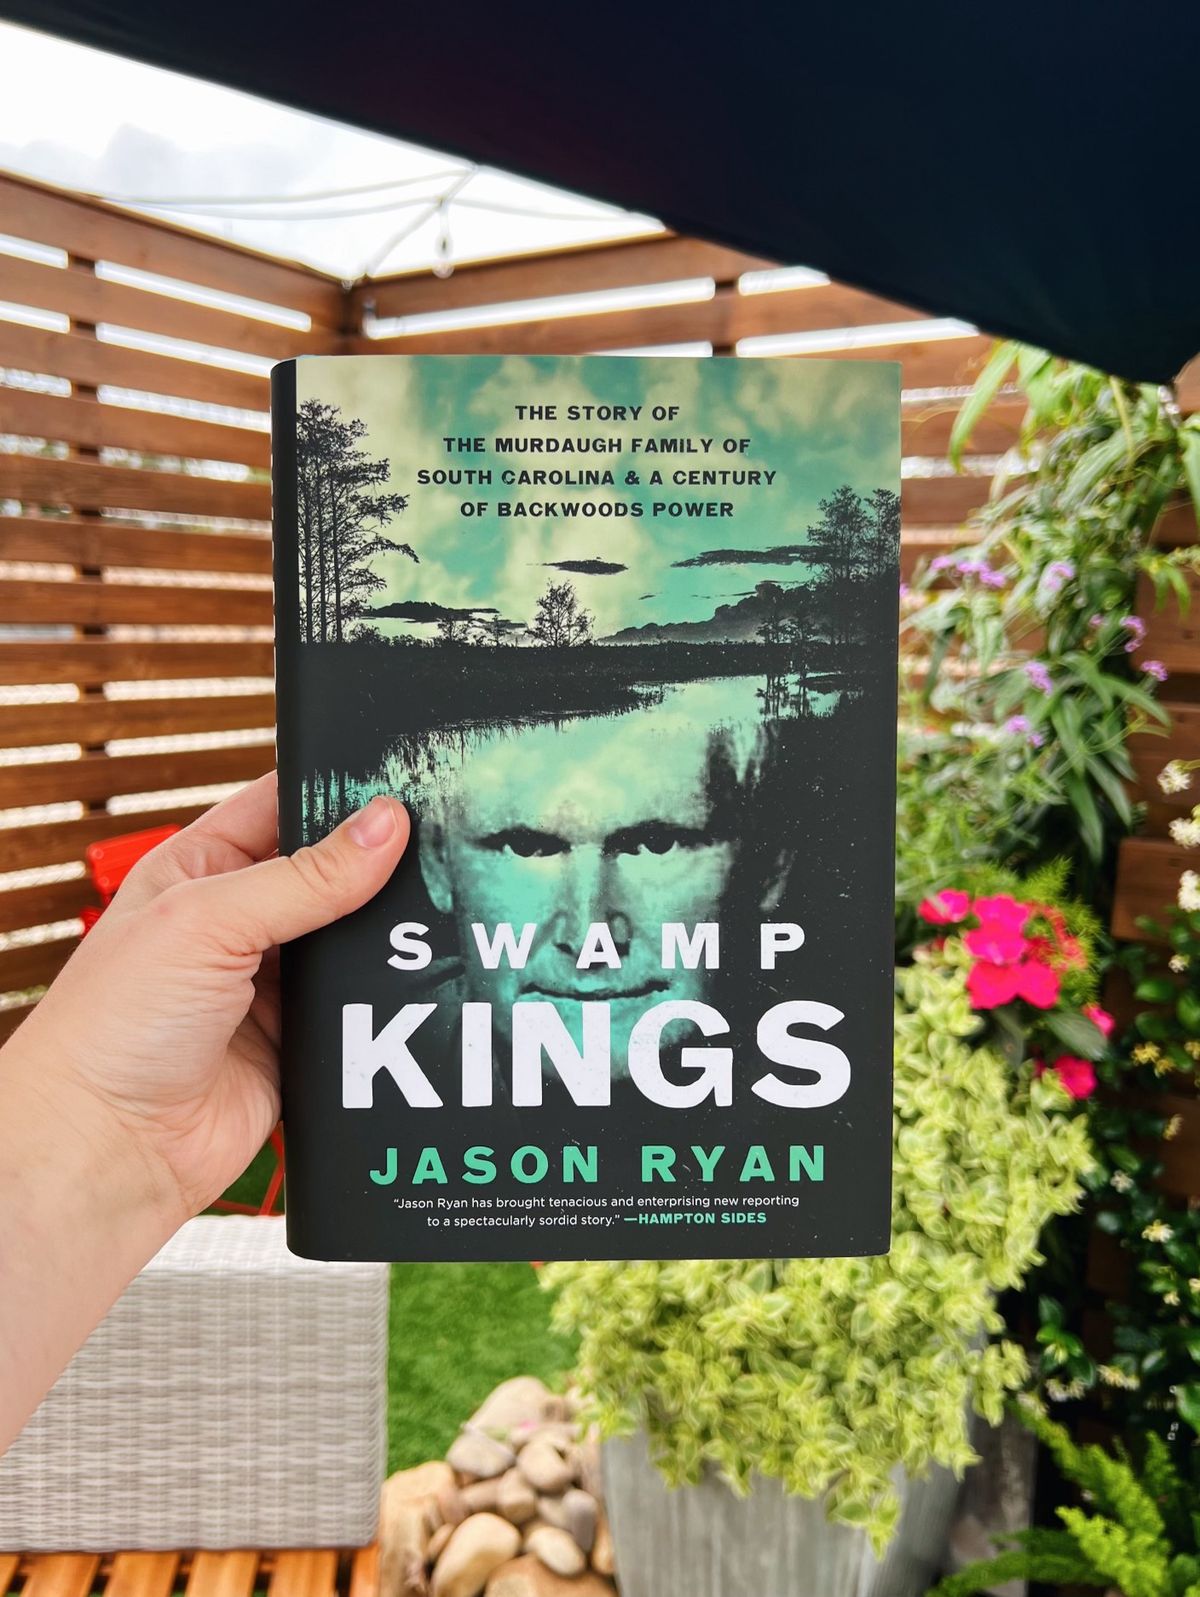 Jason Ryan "Swamp Kings" Book Talk + Signing